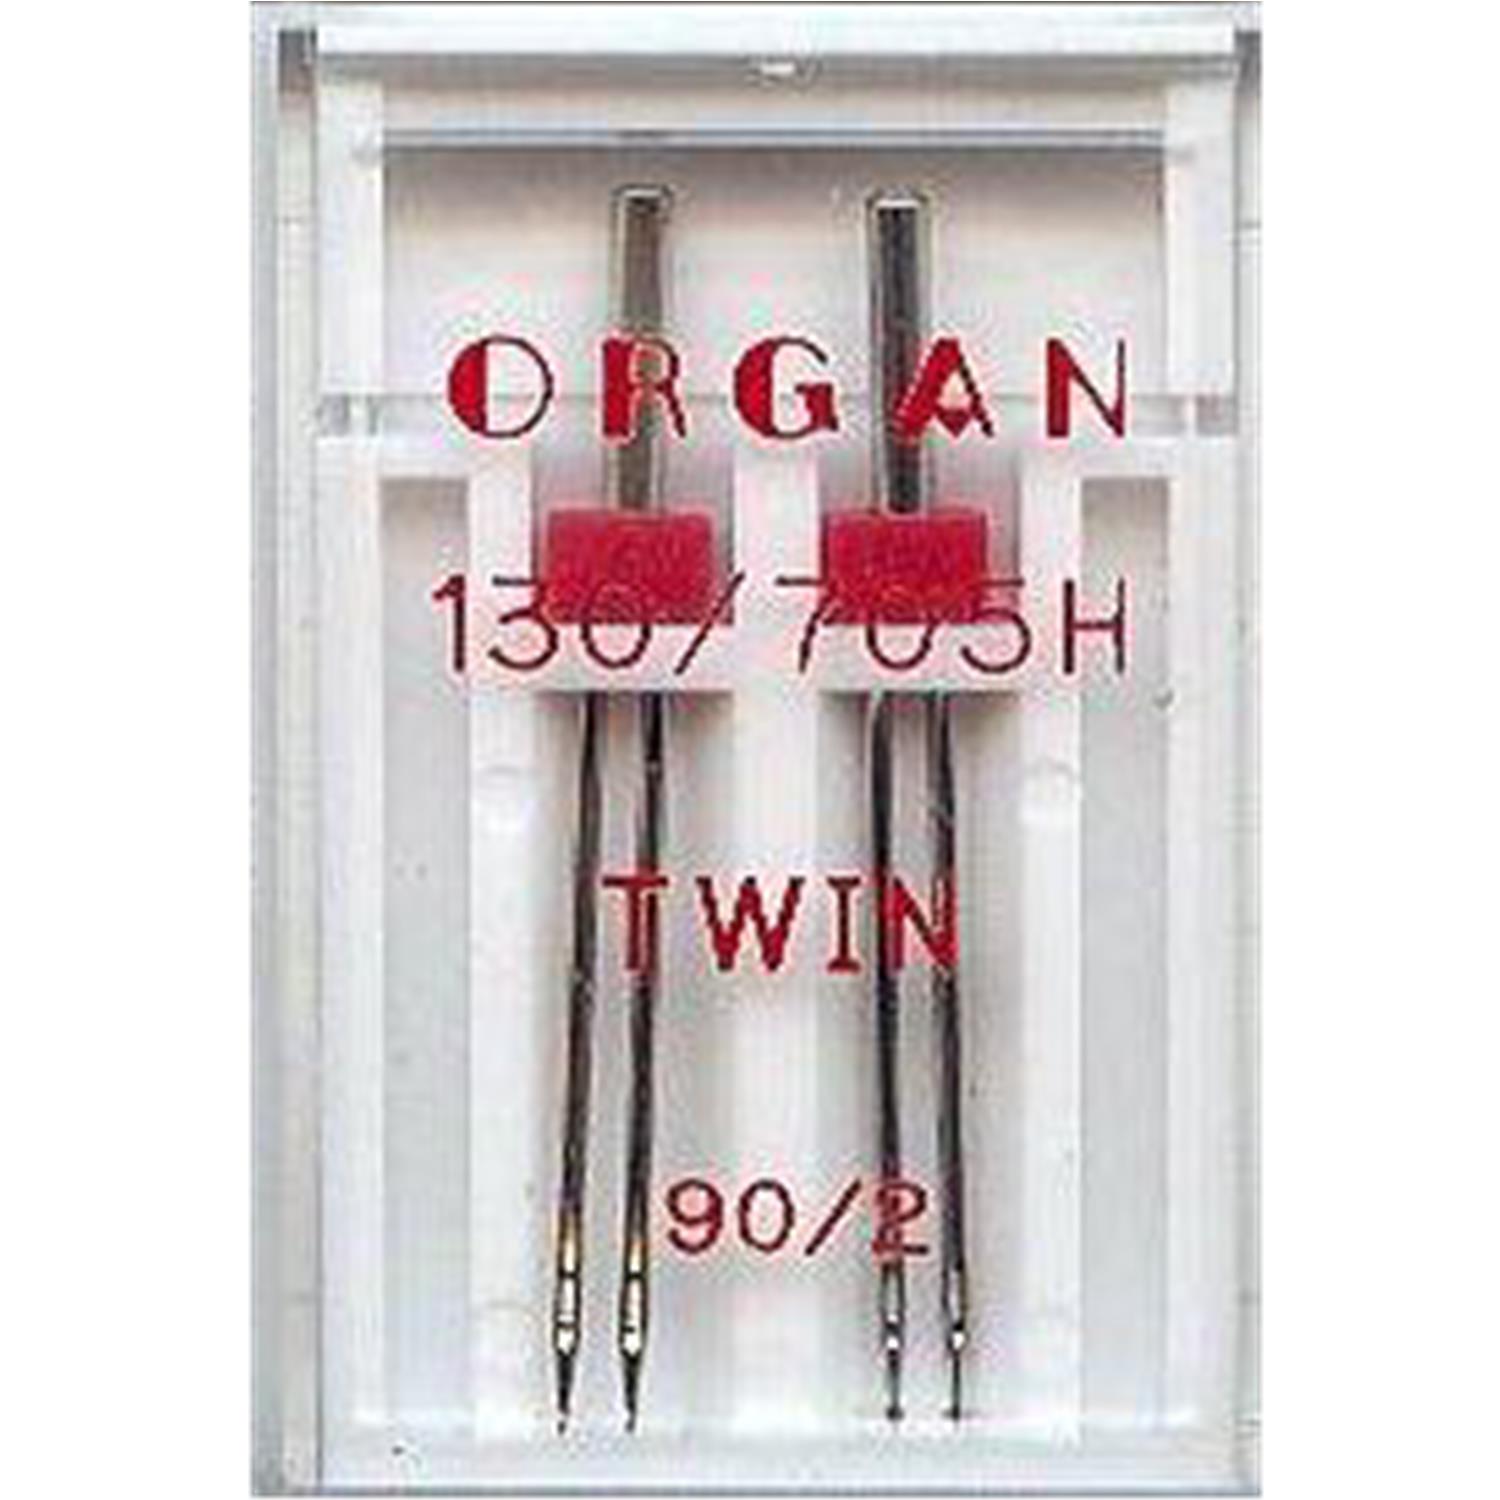 Nähmaschinennadeln Organ, TWIN 90/2.0mm #148